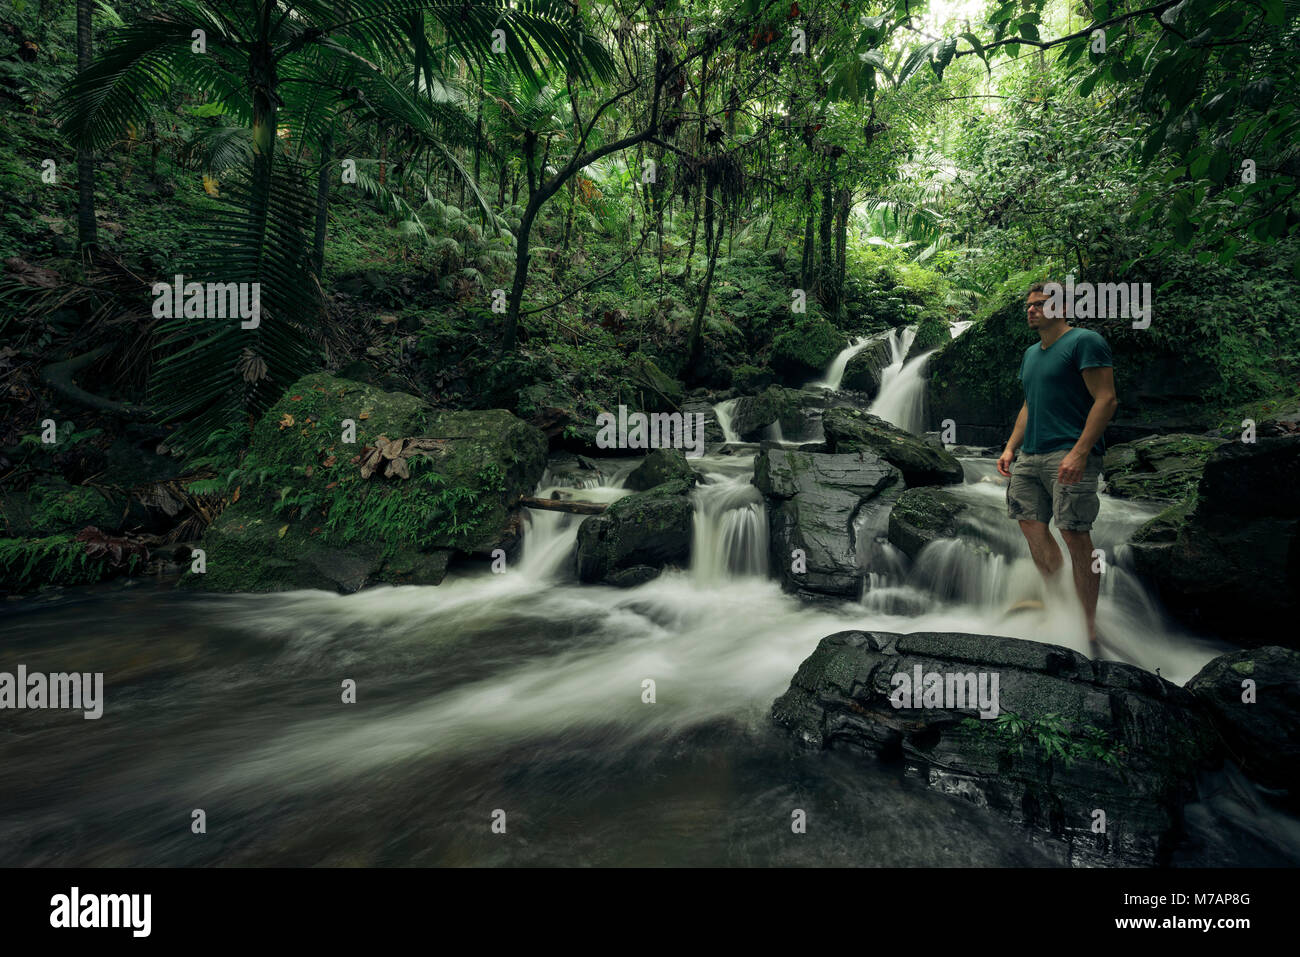 Isola dei Caraibi Porto Rico, scena nella Foresta Pluviale di El Yunque National Park, corso d'acqua, la persona è in piedi in acqua Foto Stock